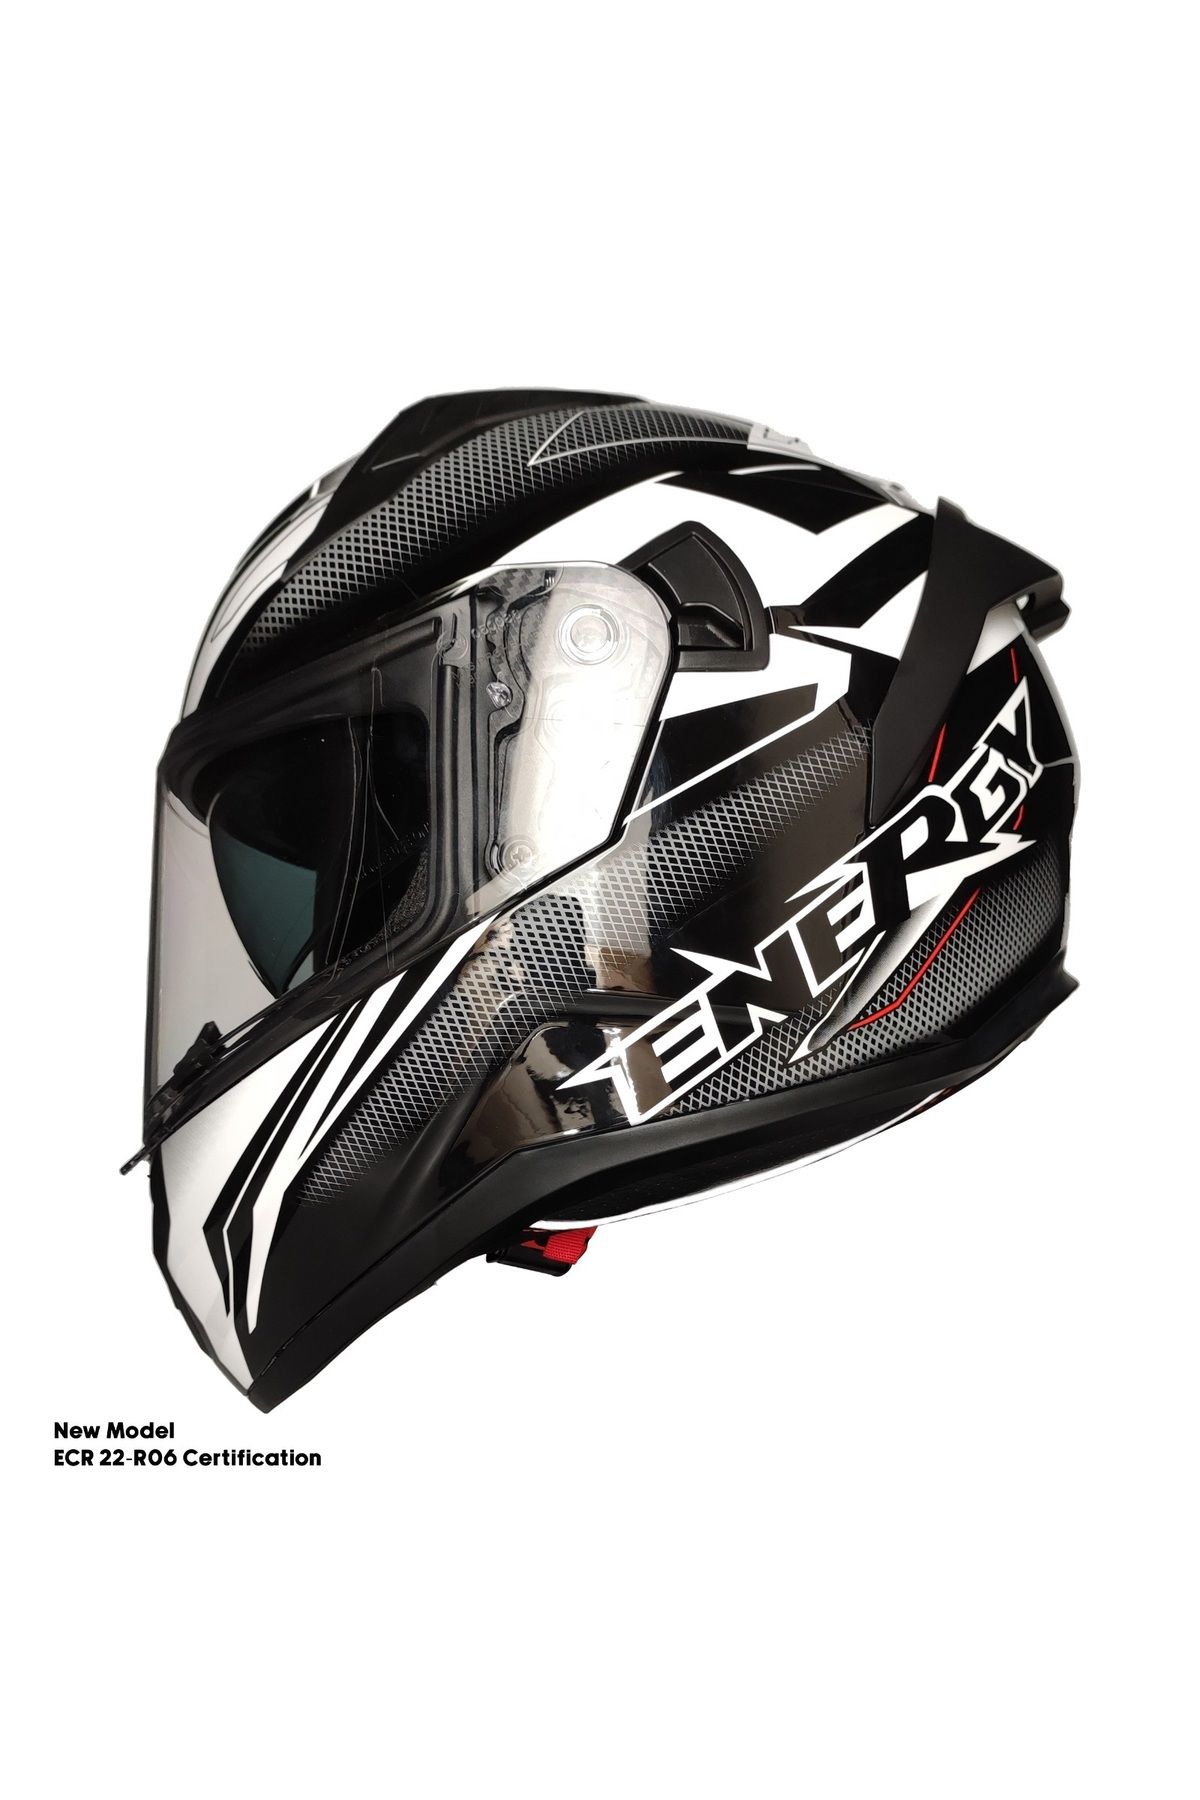 MOTOANL Motosiklet Kask Ece 22.R06 Sertifikalı Double Vizör Fiber Motor Kaskı Full Face Yeni Sezon ENERGY